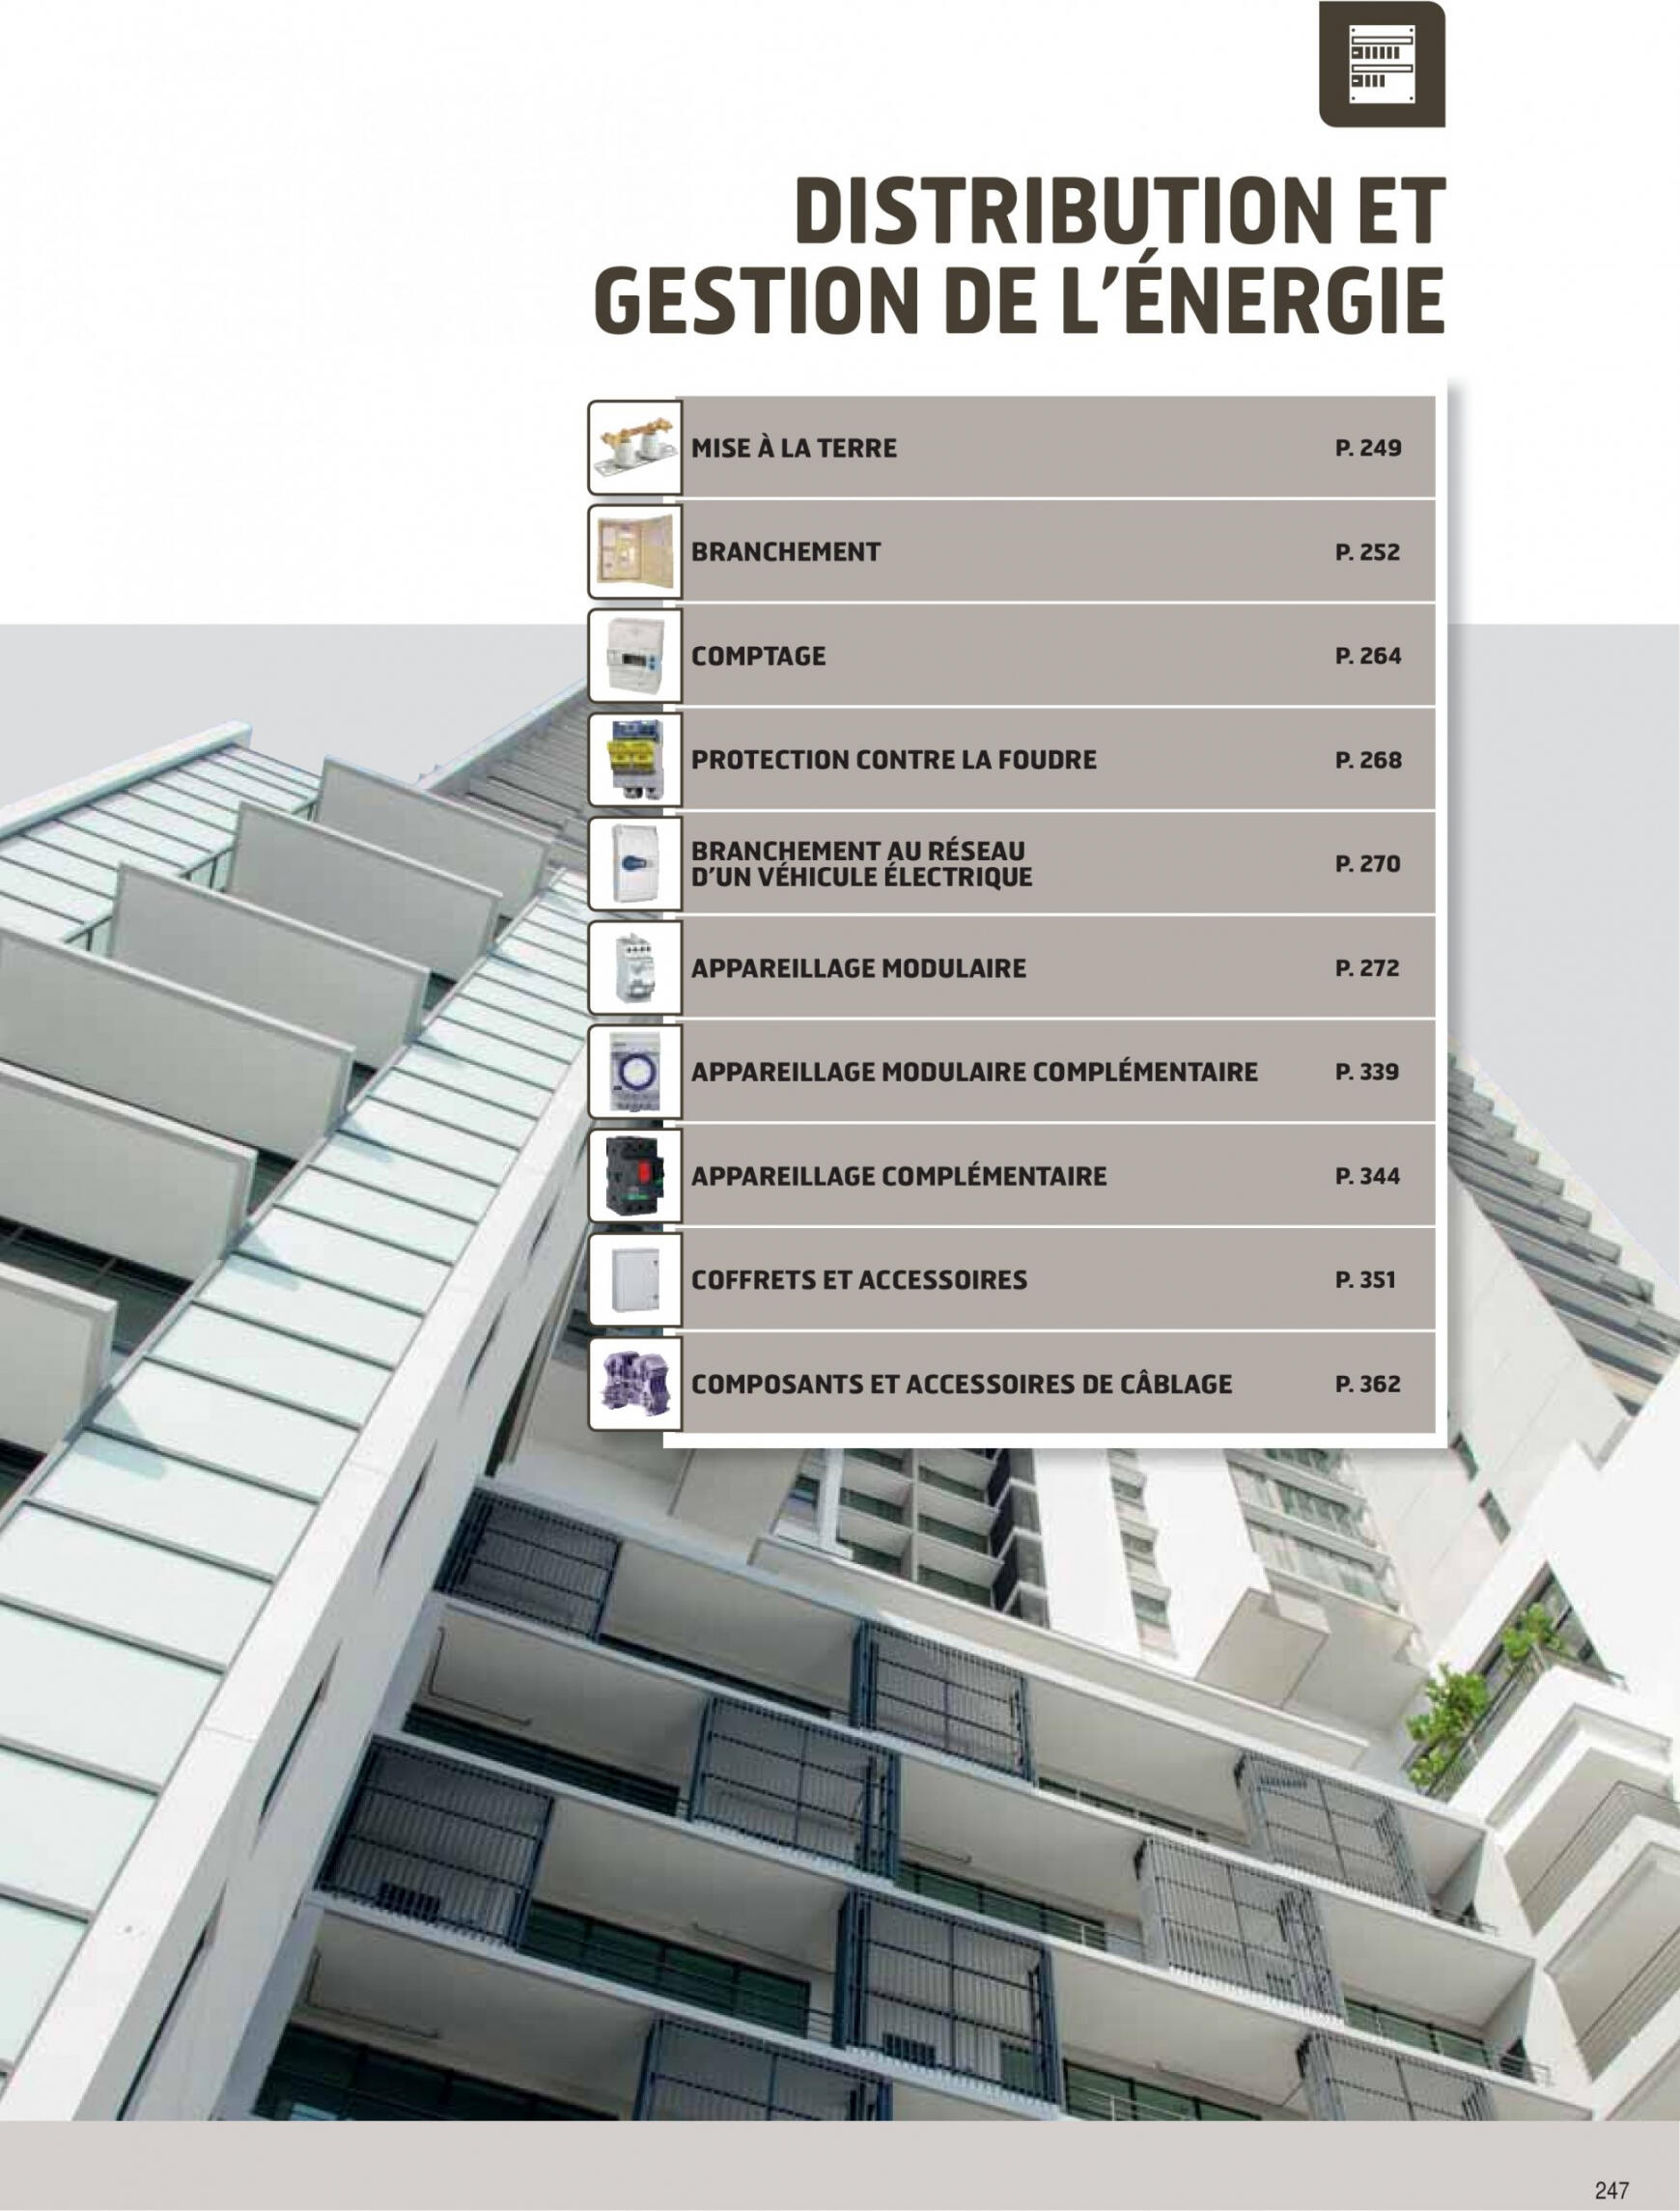 rexel - Rexel - Distribution et Gestion de l'Energie - page: 1